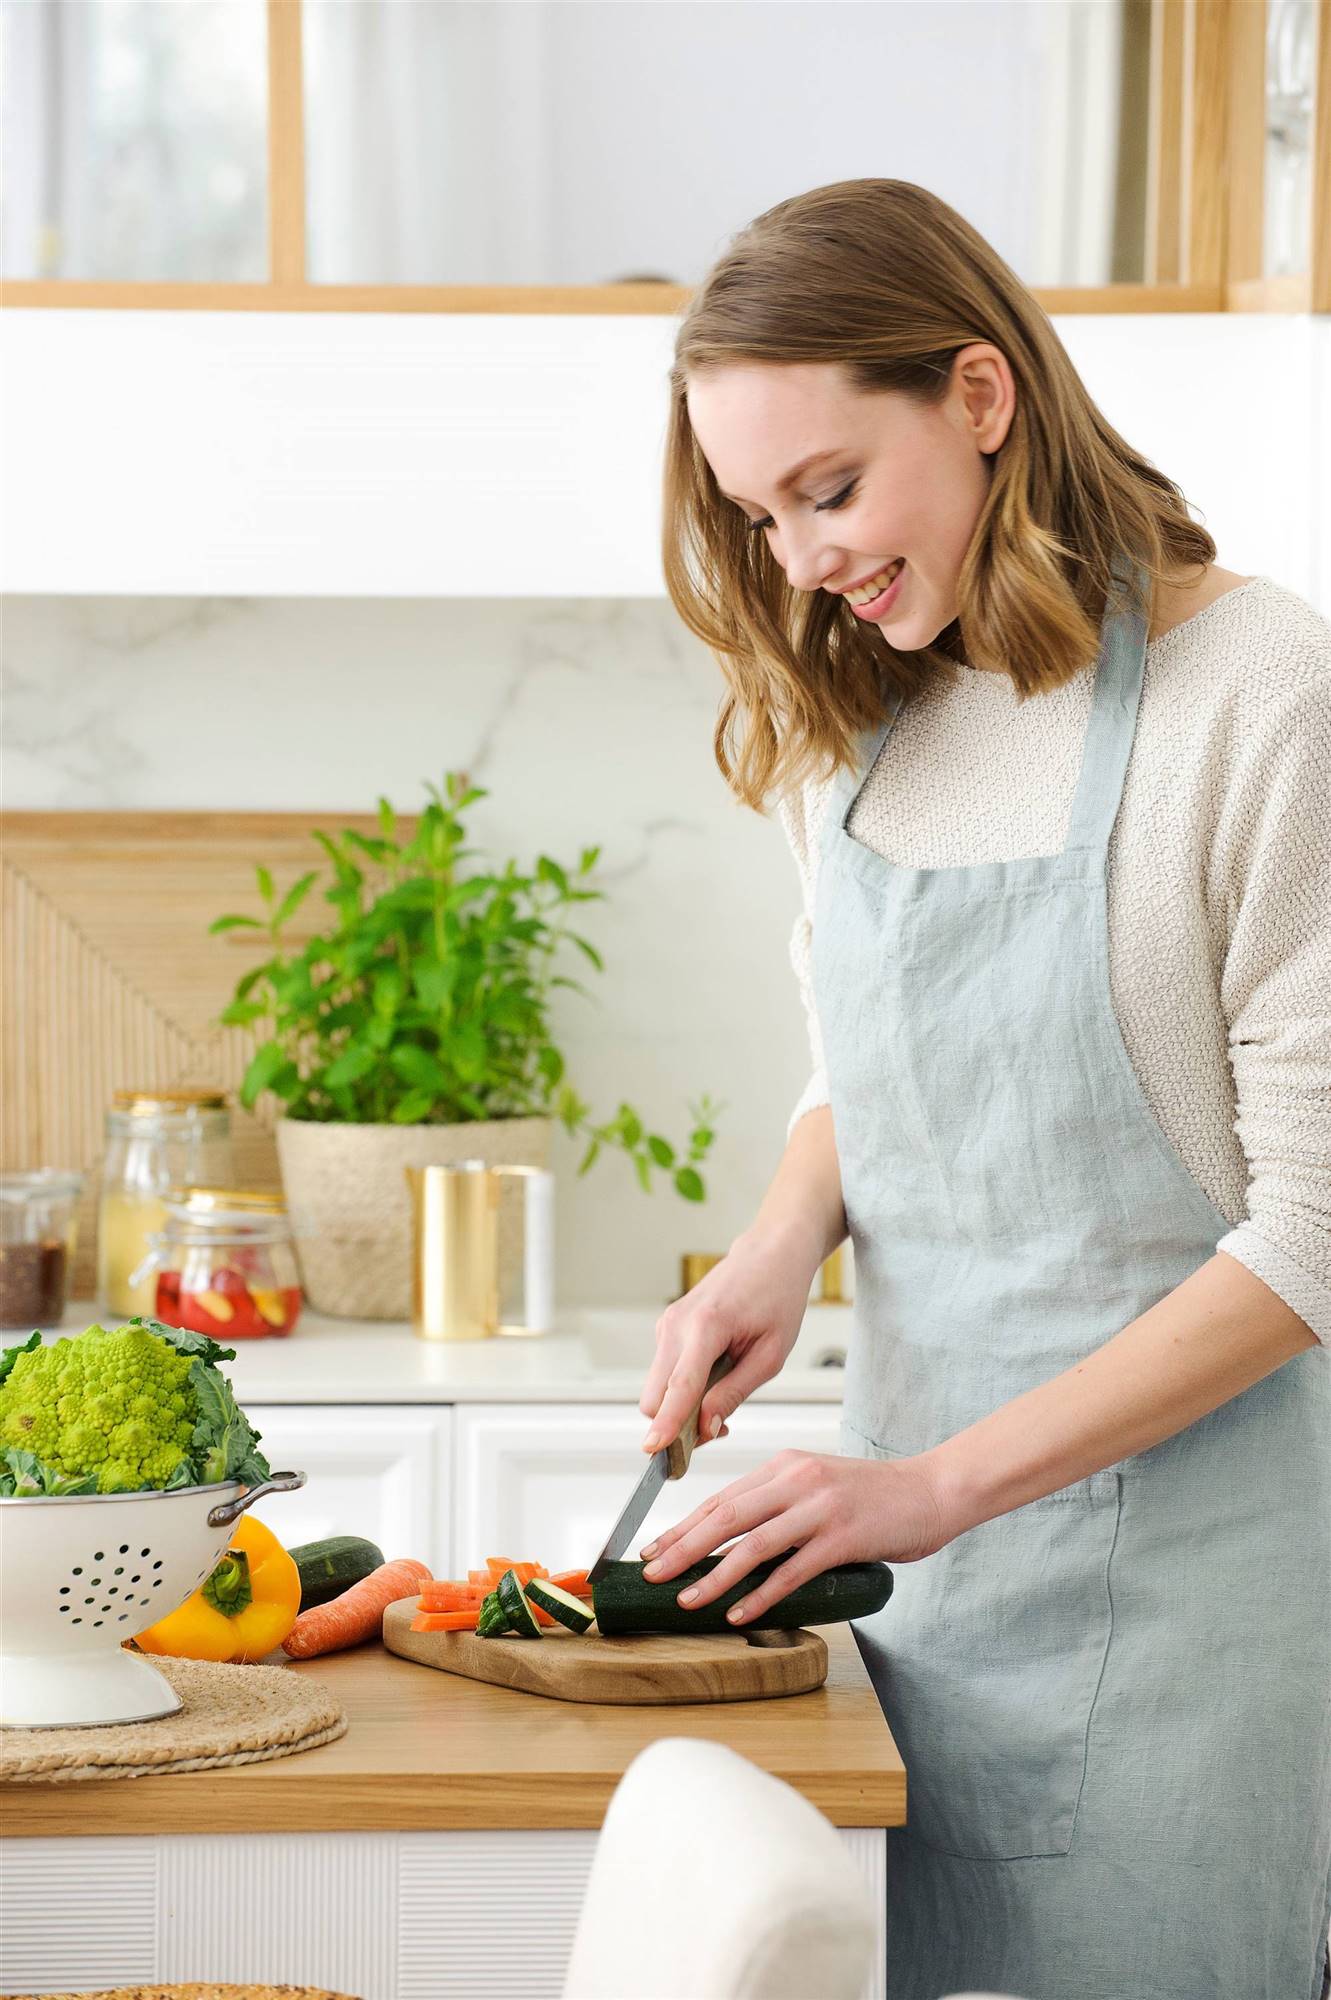 Mujer en una cocina cortando verdura 00476193_O